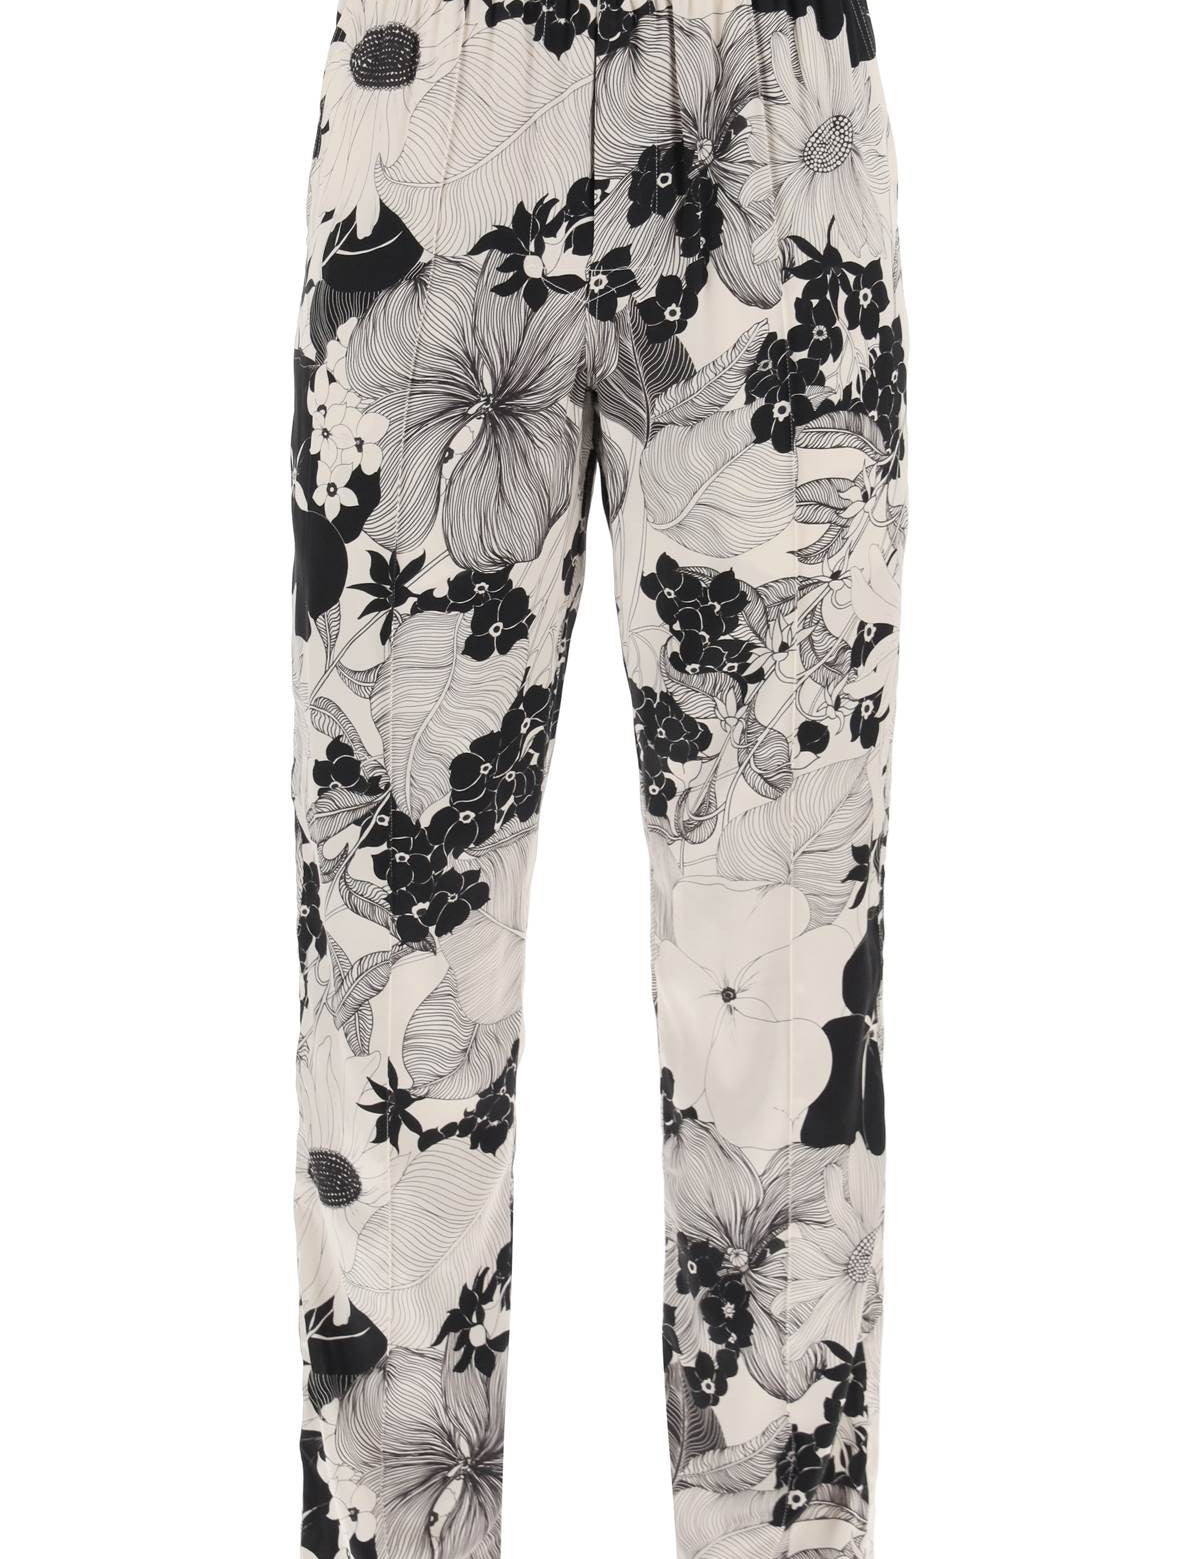 tom-ford-pajama-pants-in-floral-silk_222b1761-da3a-4007-9a9d-a389cefc556a.jpg